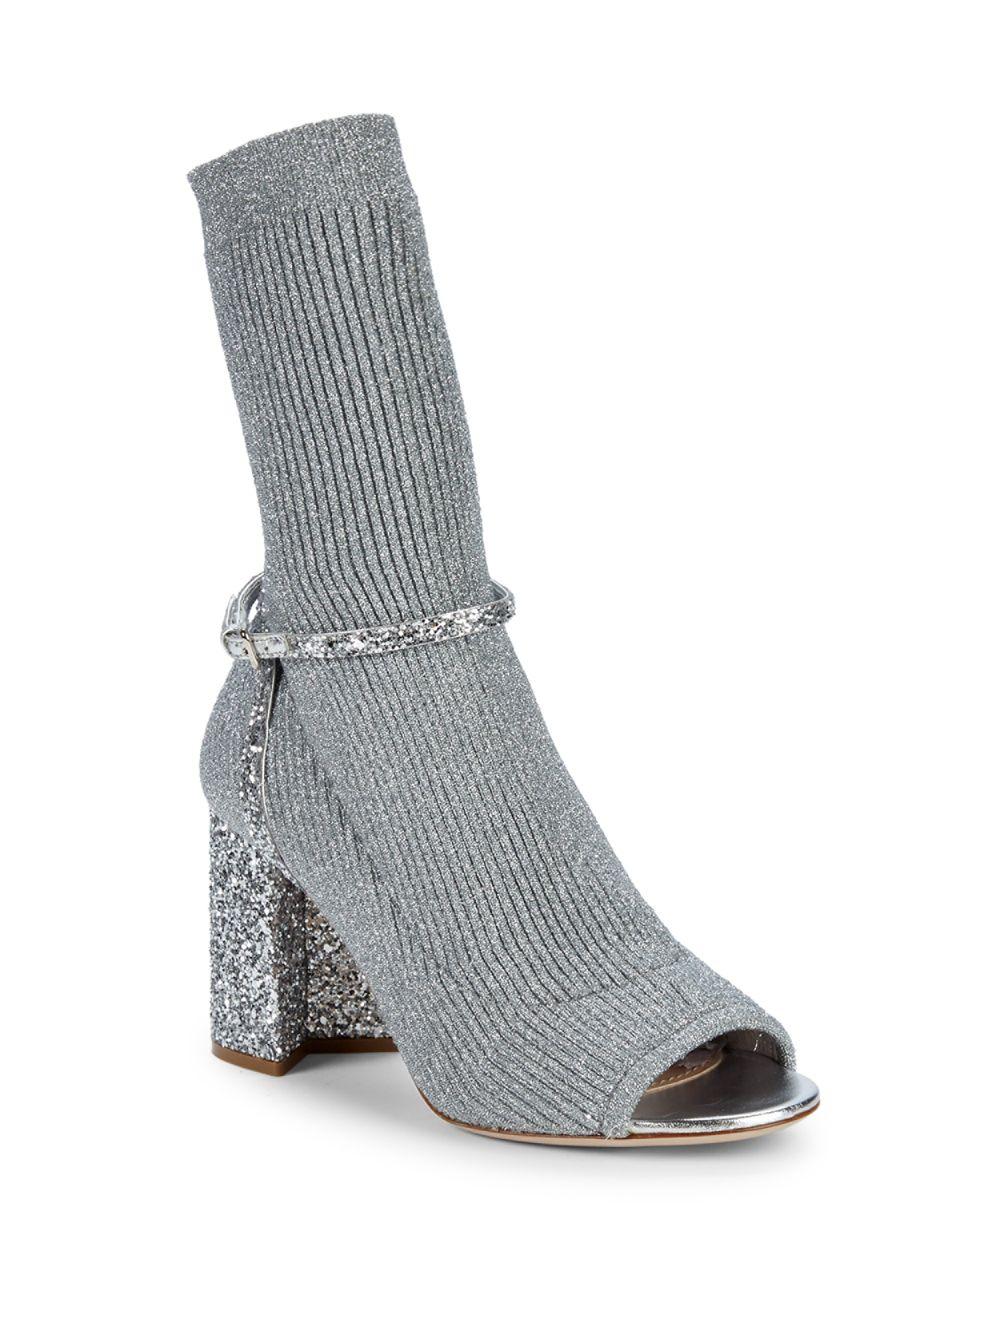 Miu Miu Leather Mary Metallic Glittered Block Heel Sock Boots - Lyst